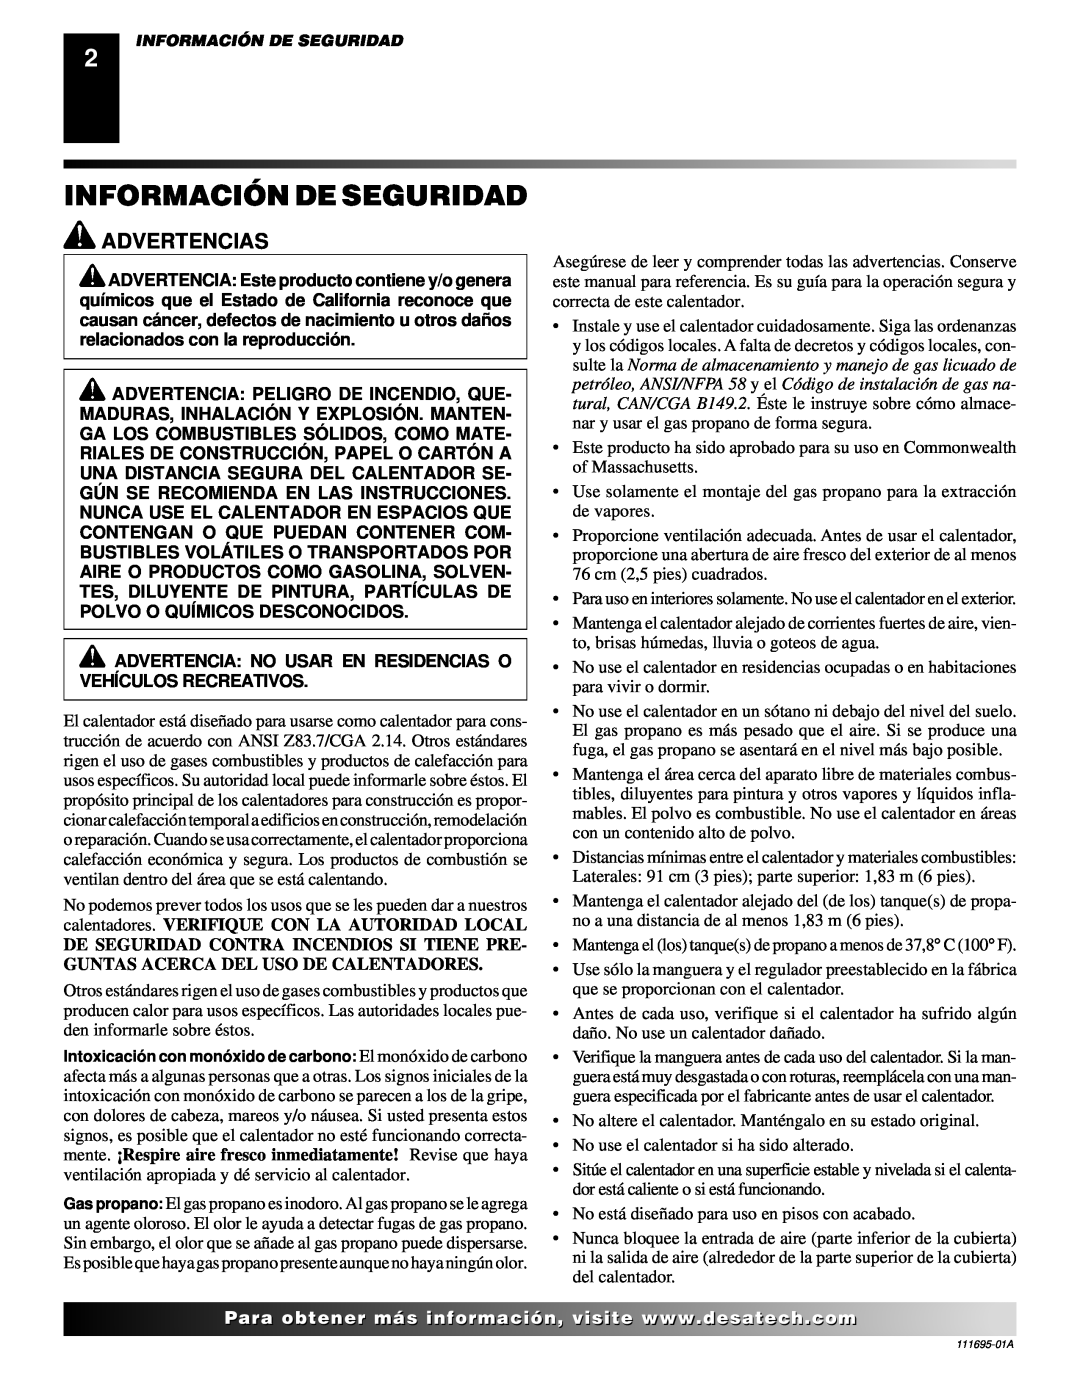 Desa 000 Btu/hr Models owner manual Información De Seguridad, Advertencias, Paramás 